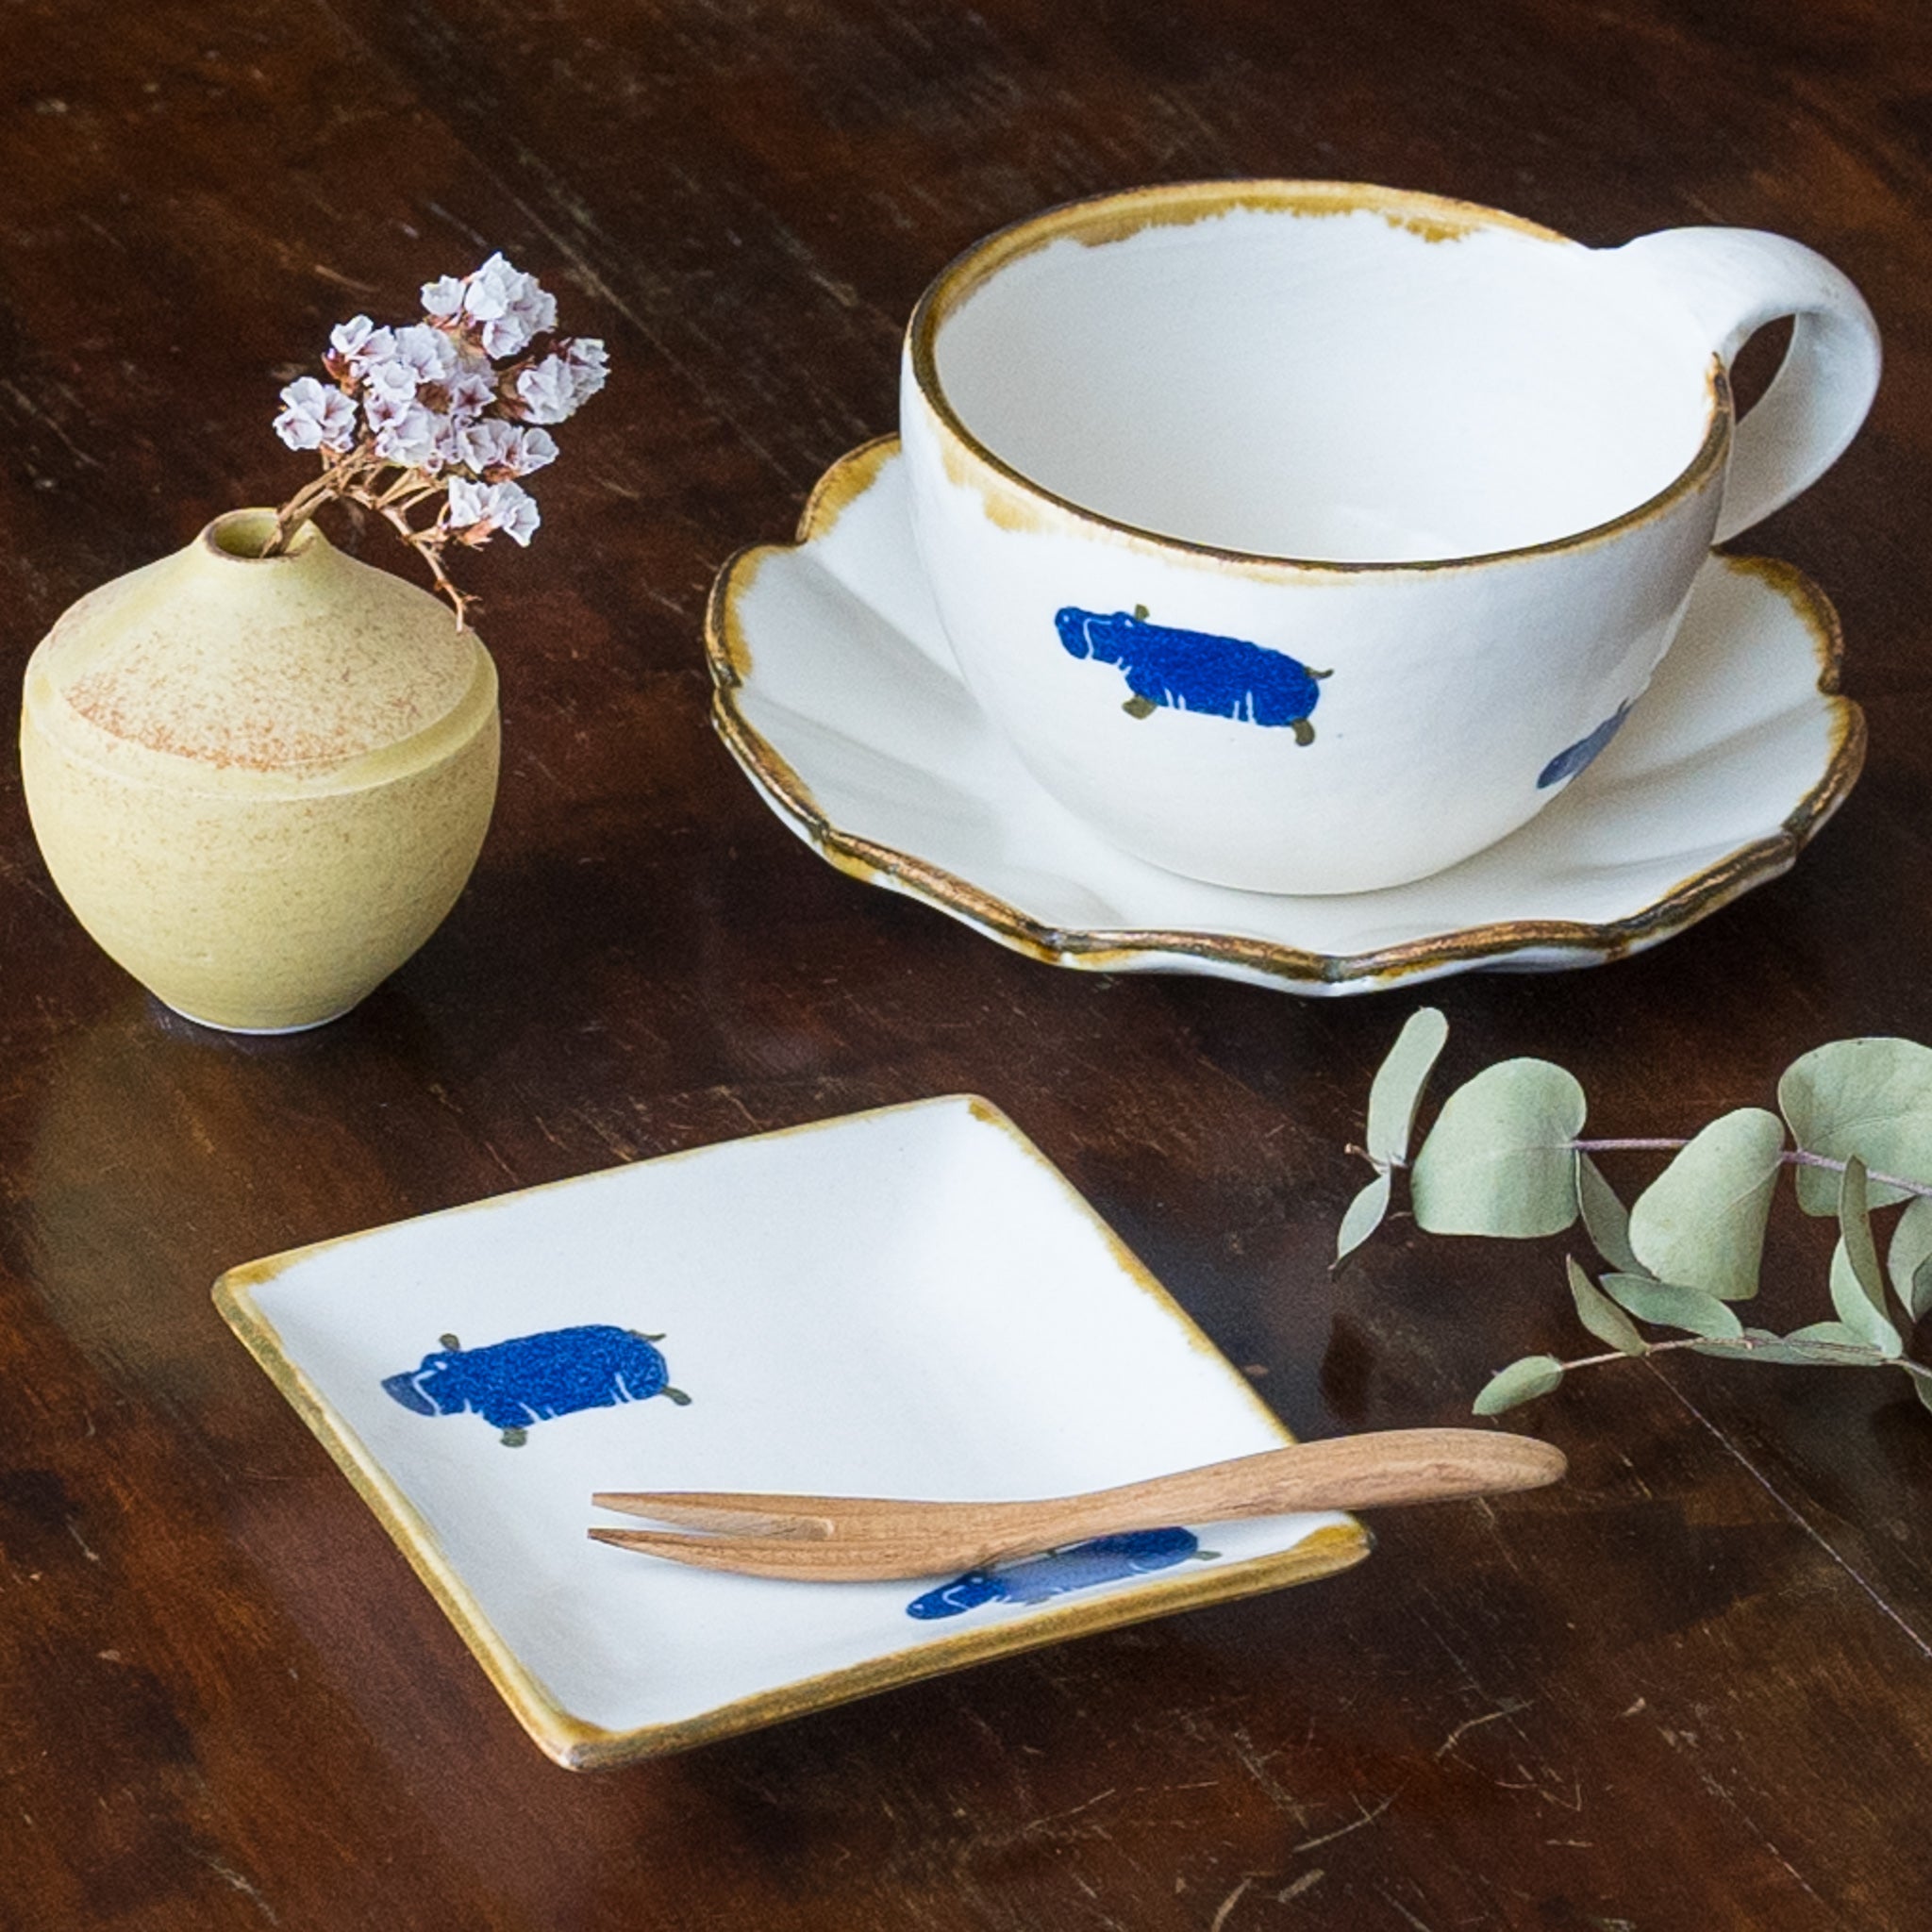 Yasumi Koubou’s Japanese paper dyed animal series tableware for enjoying tea time